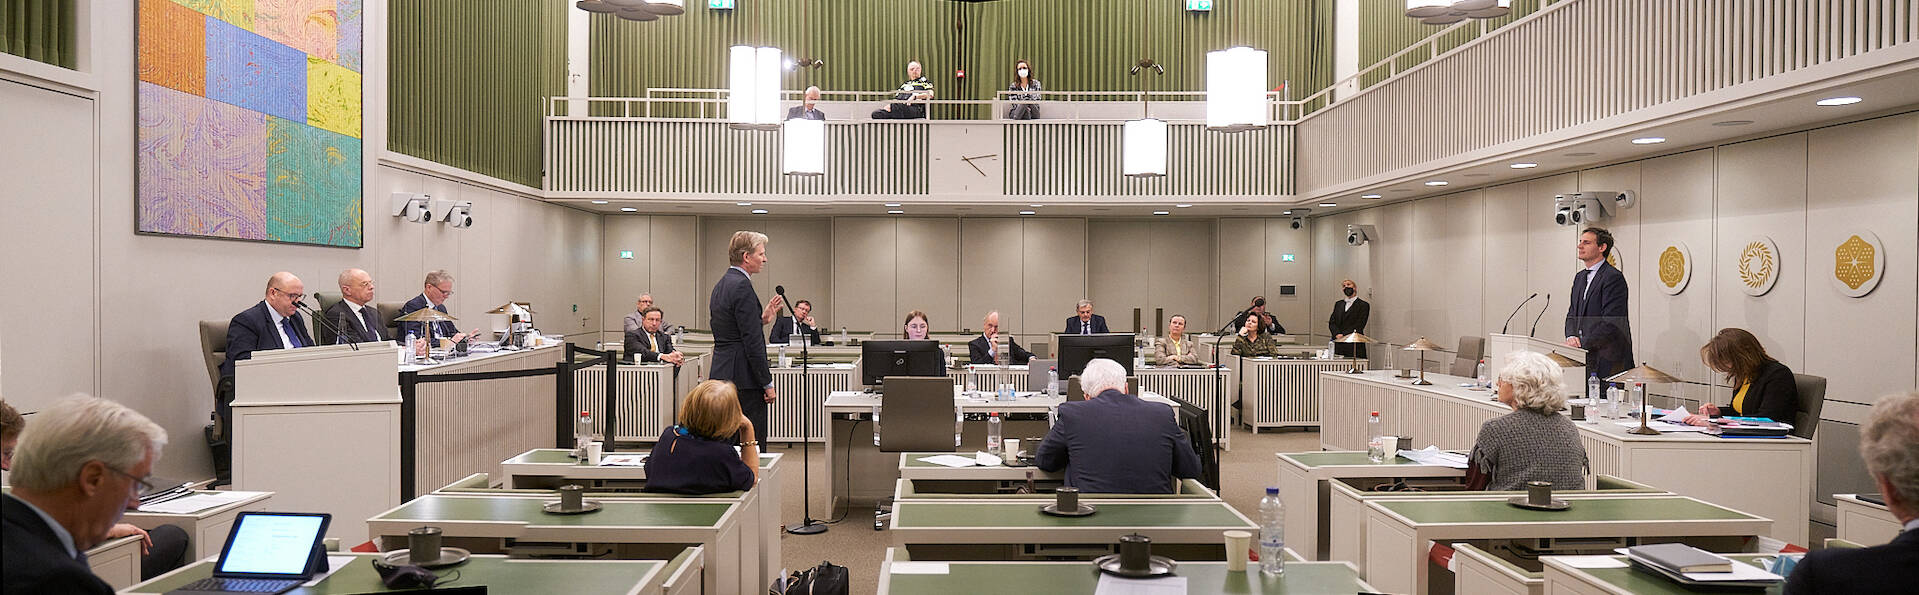 De Eerste Kamer tijdens het debat op 8 februari 2022